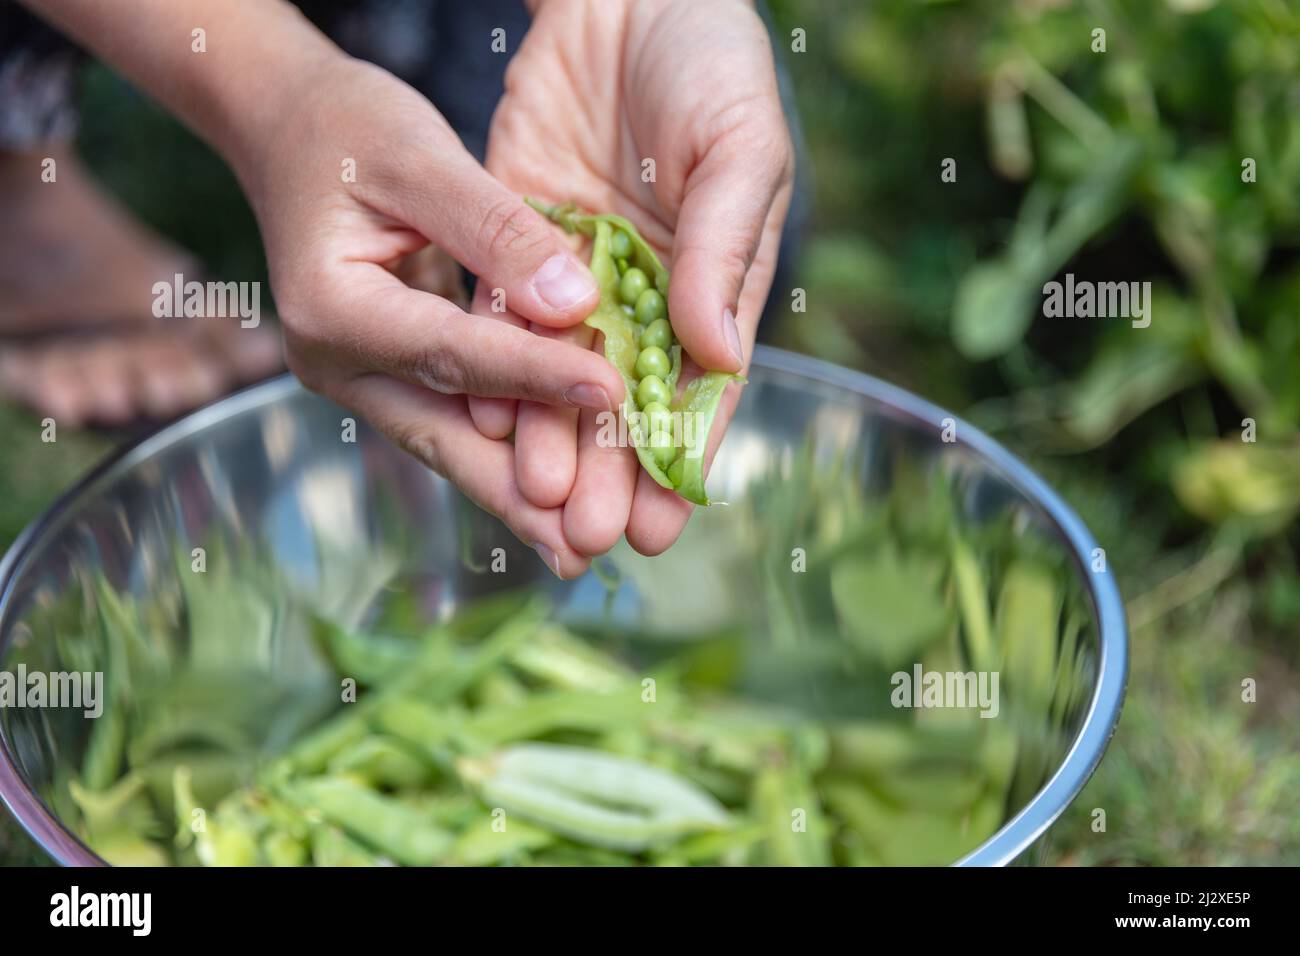 Nahaufnahme von frischen grünen Erbsen in weiblichen Händen über der Metallschale. Ernte der grünen Erbsen Saison Stockfoto